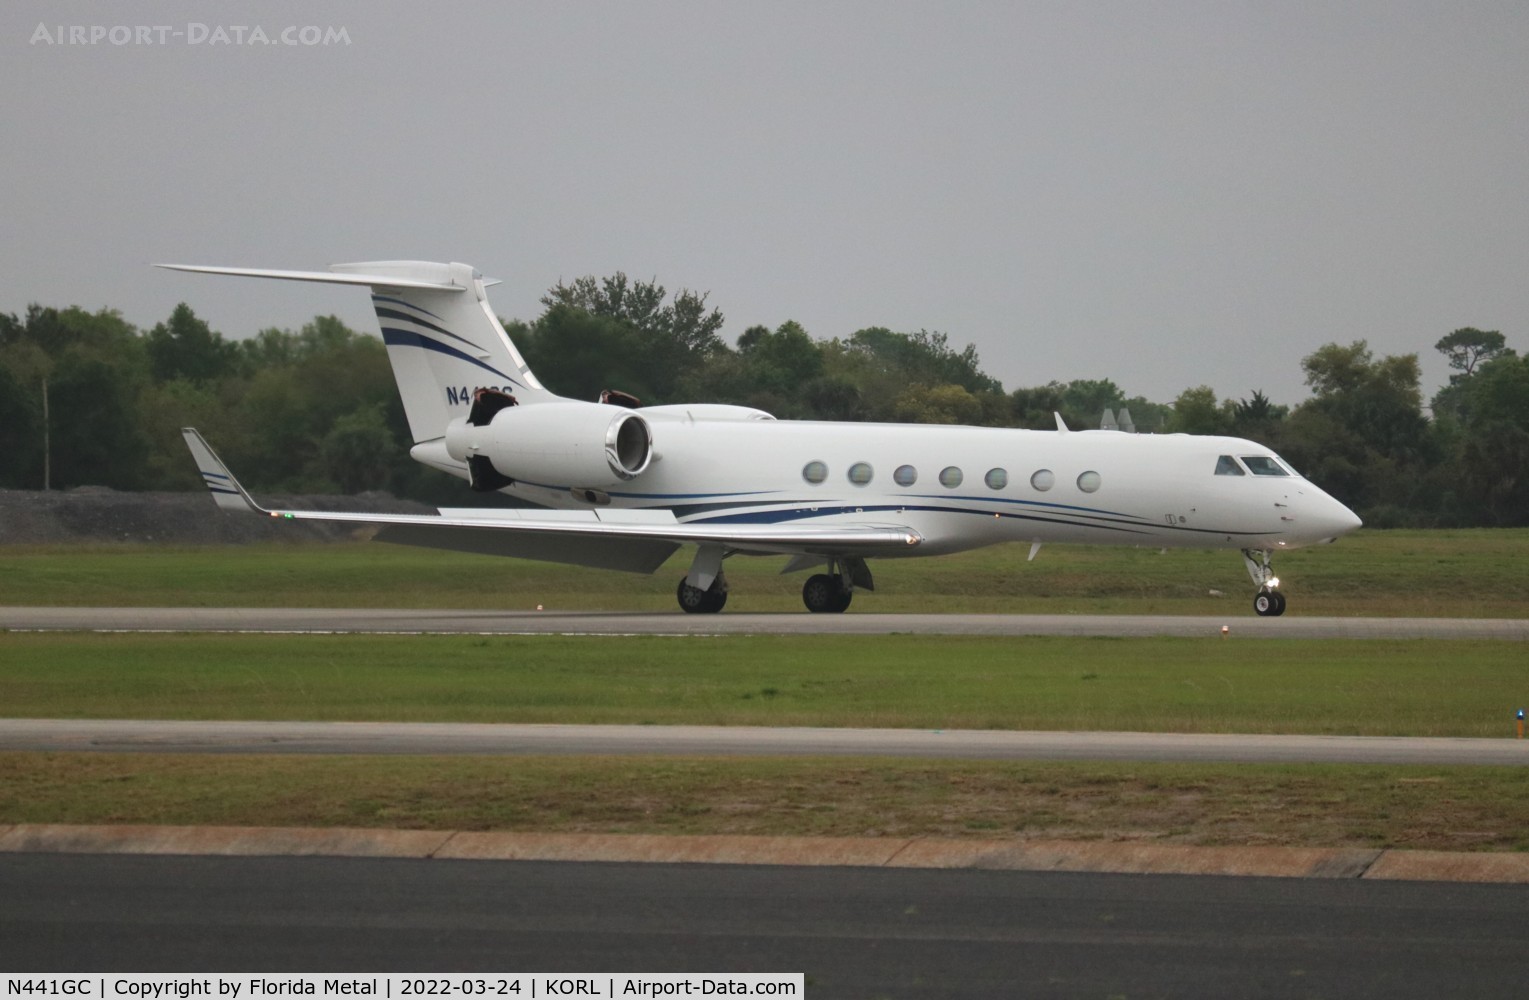 N441GC, 2013 Gulfstream Aerospace V-SP G550 C/N 5441, G550 zx